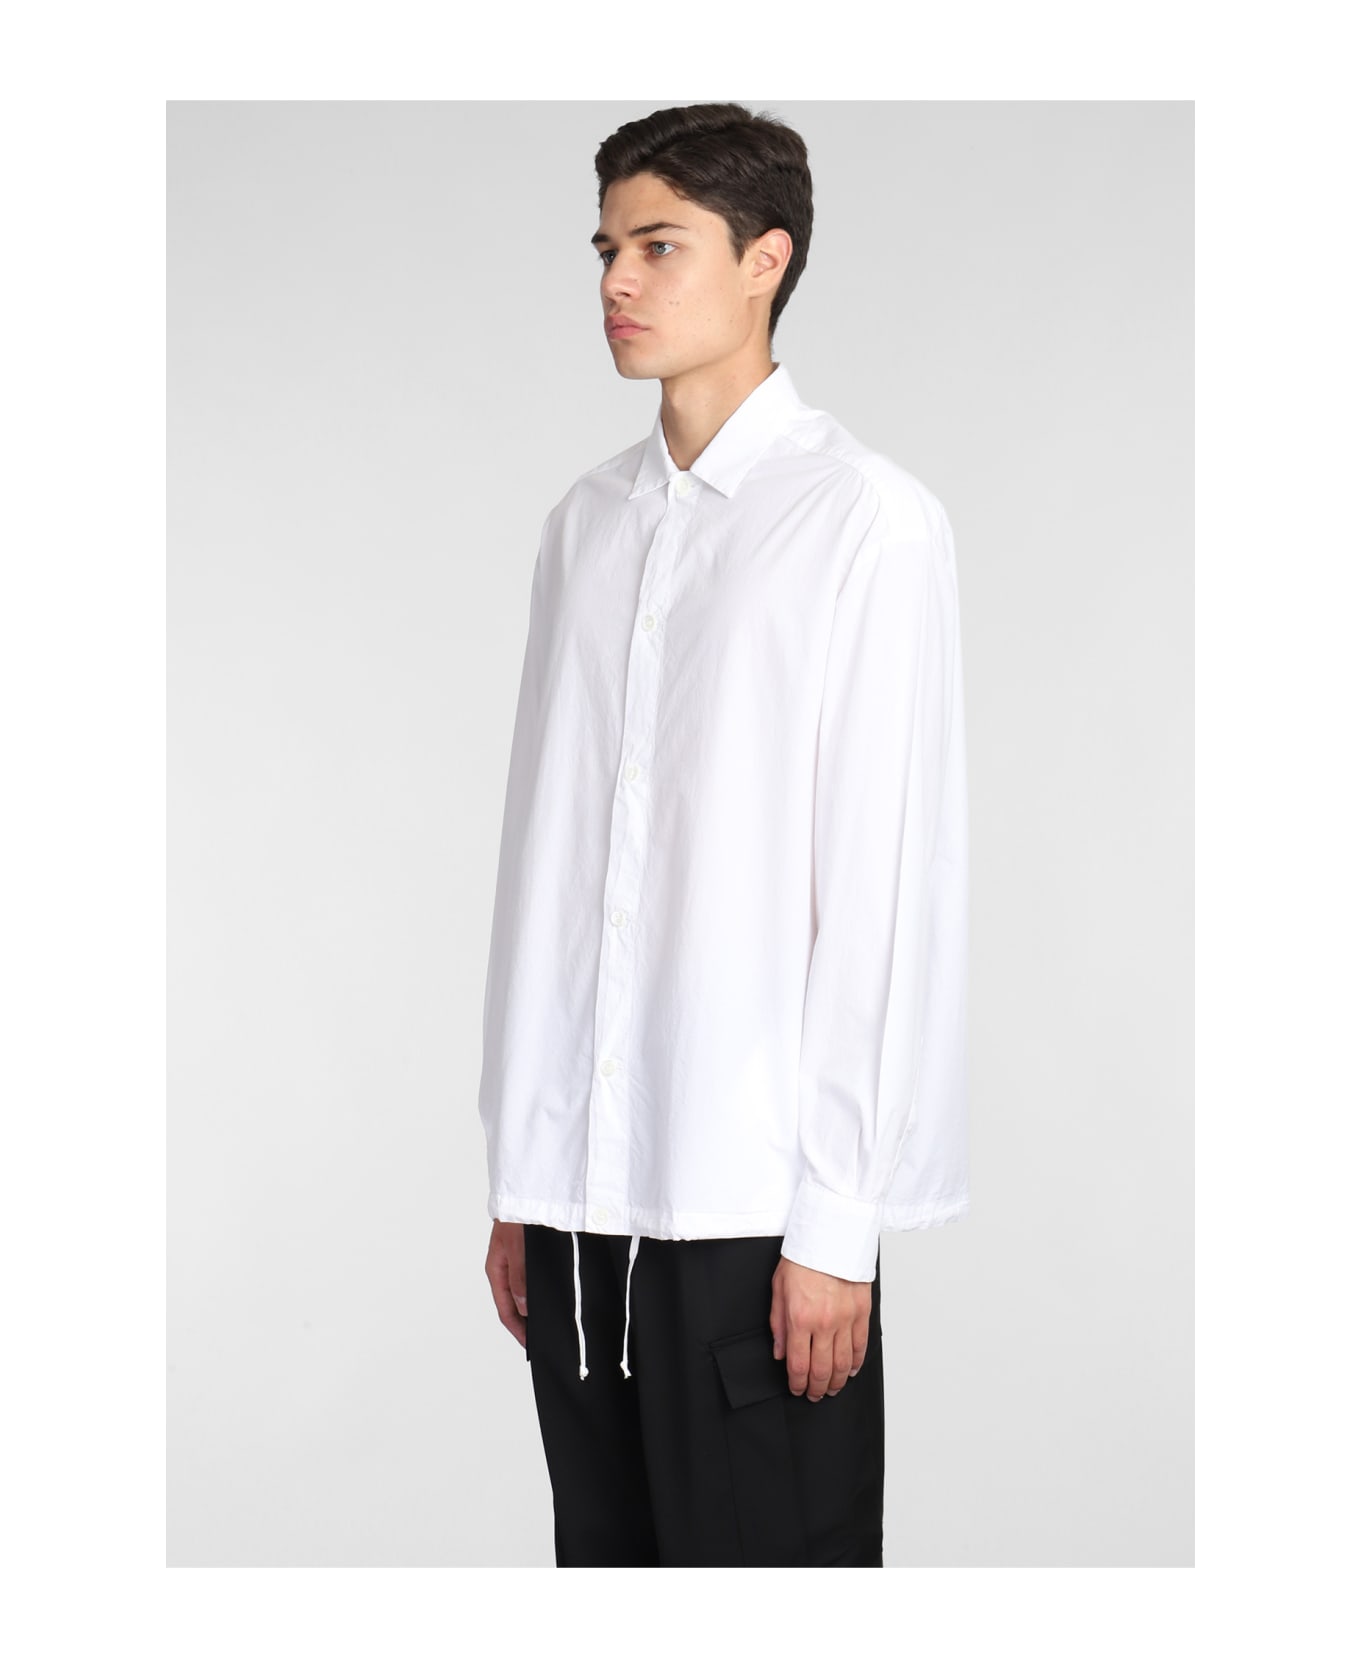 Barena Bao Shirt In White Cotton - Bianco シャツ